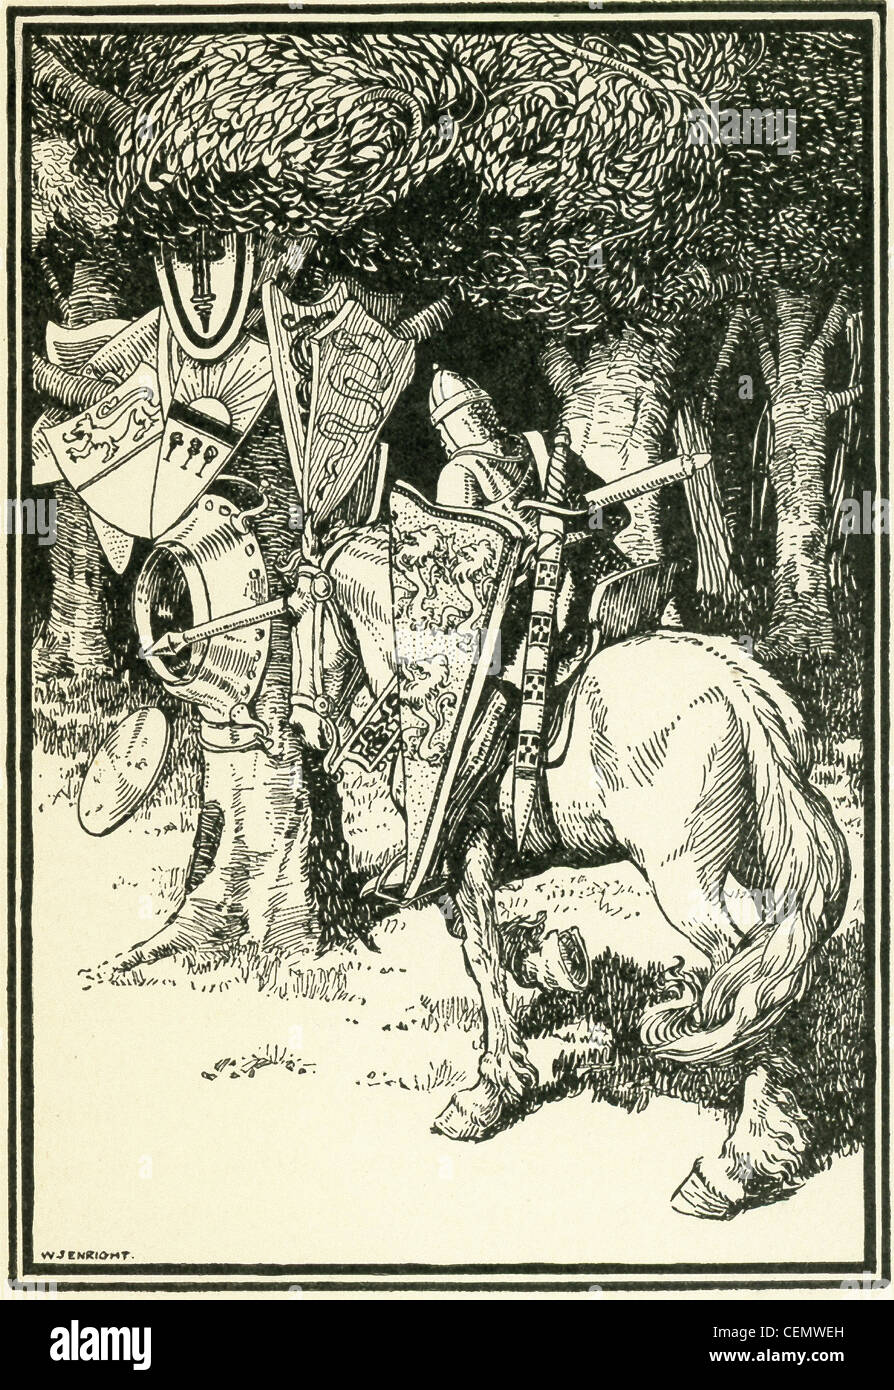 Sir Lancelot hits le fond d'un bassin de fer au pied d'un arbre qui était accrochée sur les boucliers d'un grand nombre de frères chevaliers. Banque D'Images